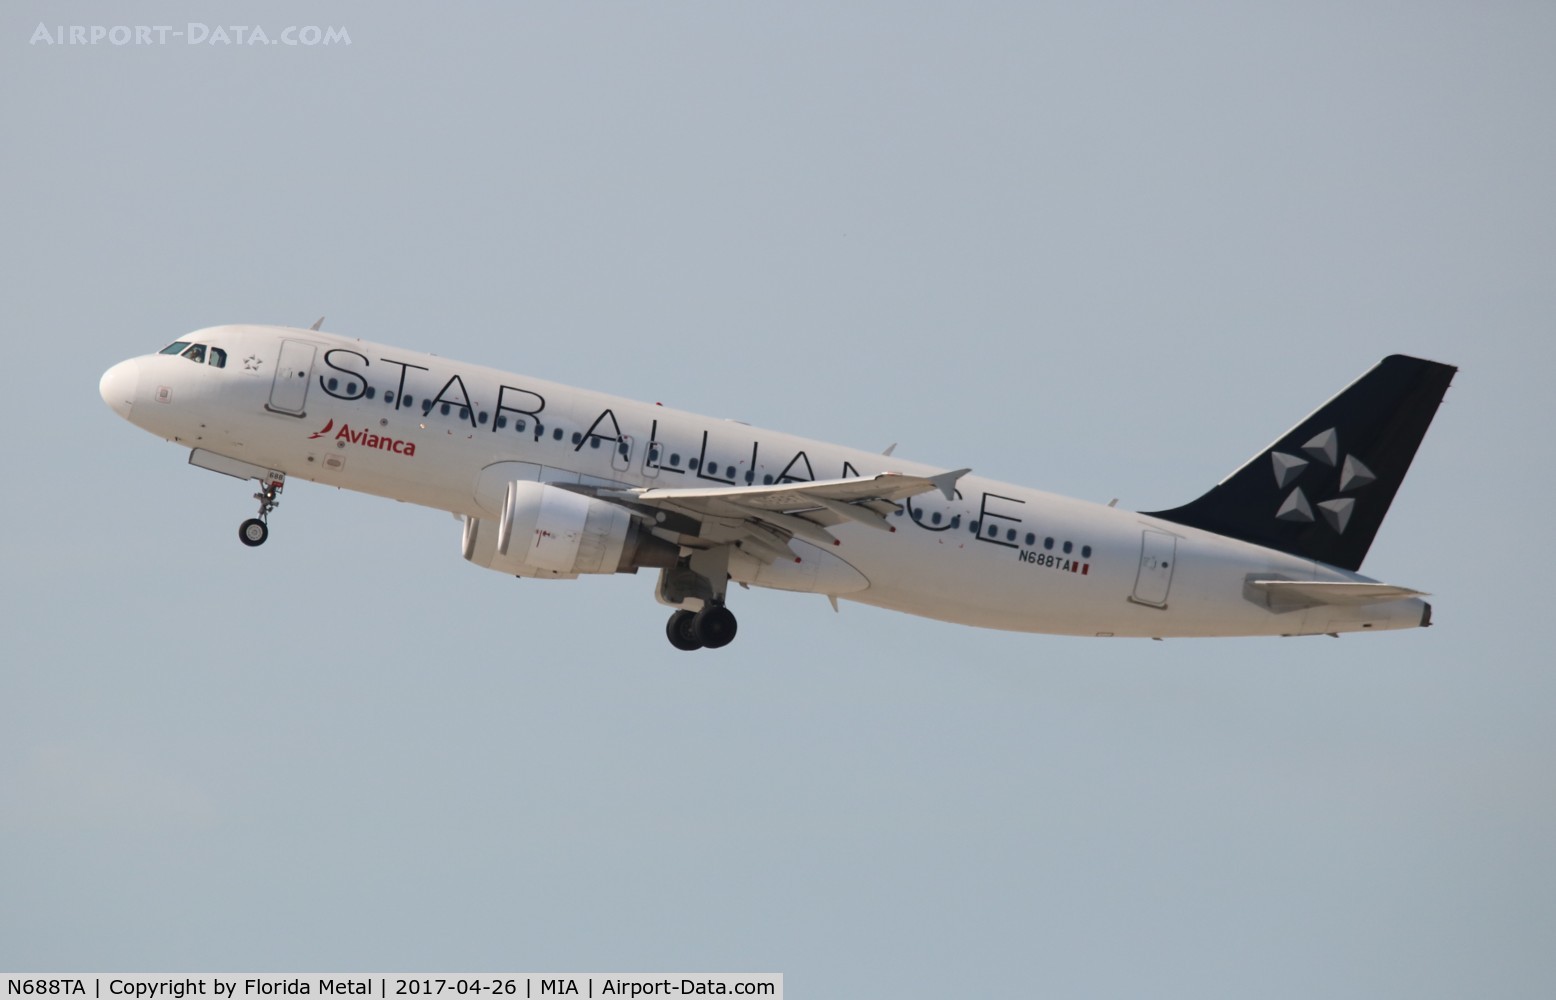 N688TA, 2012 Airbus A320-214 C/N 5243, Avianca Star Alliance